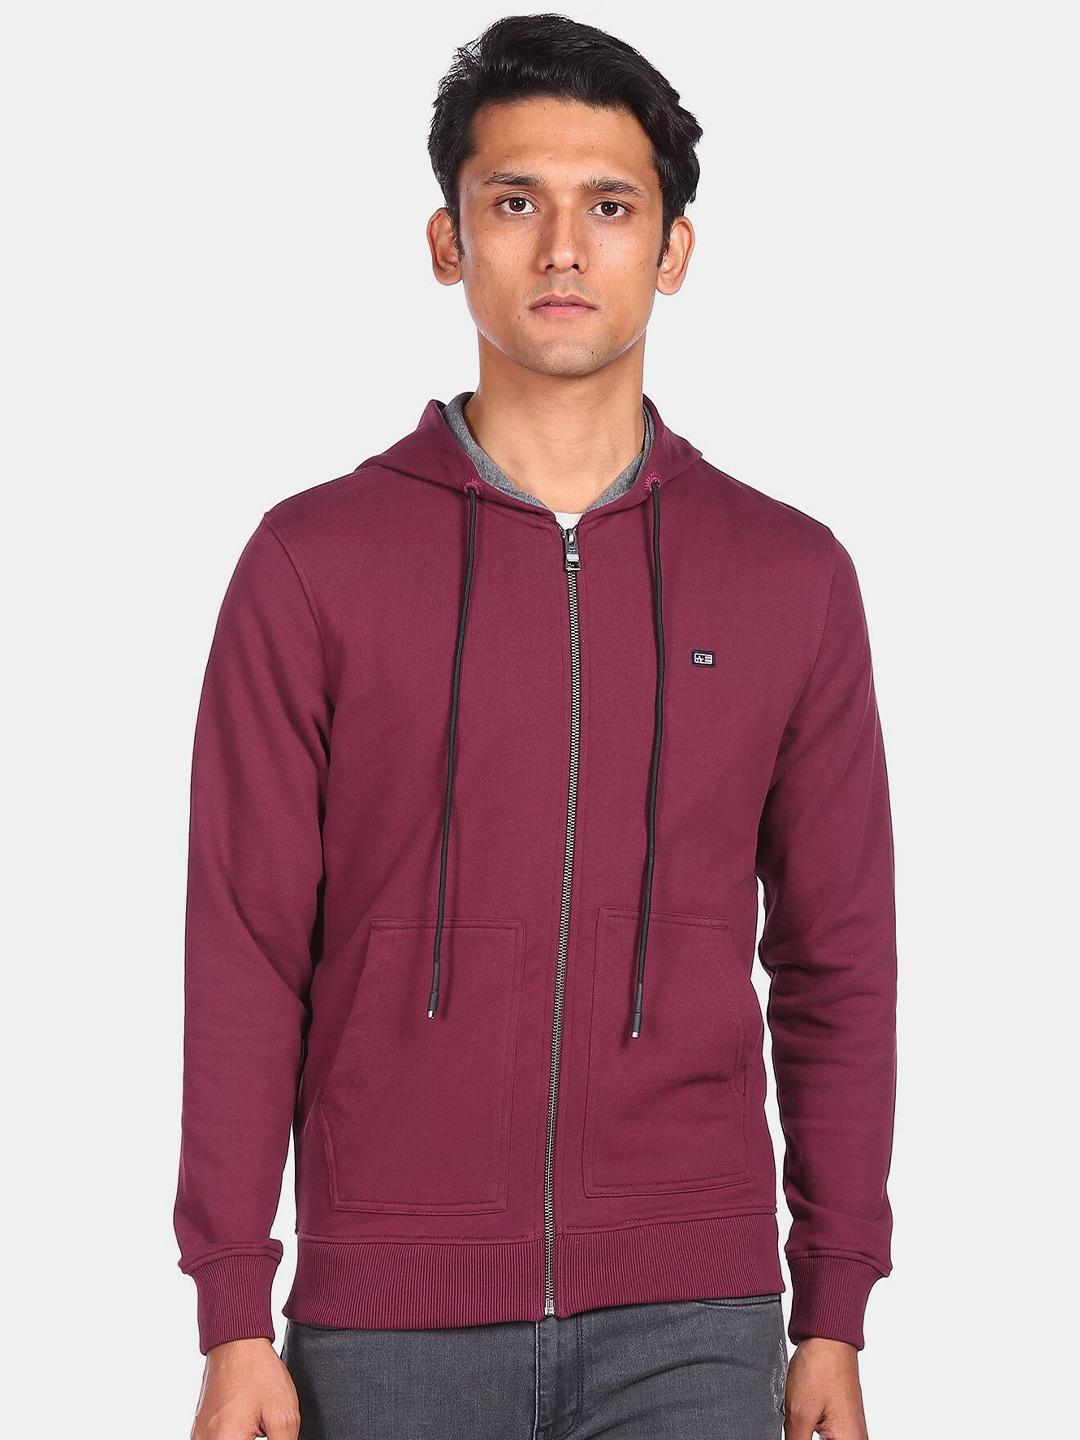 arrow-sport-men-burgundy-sweatshirt